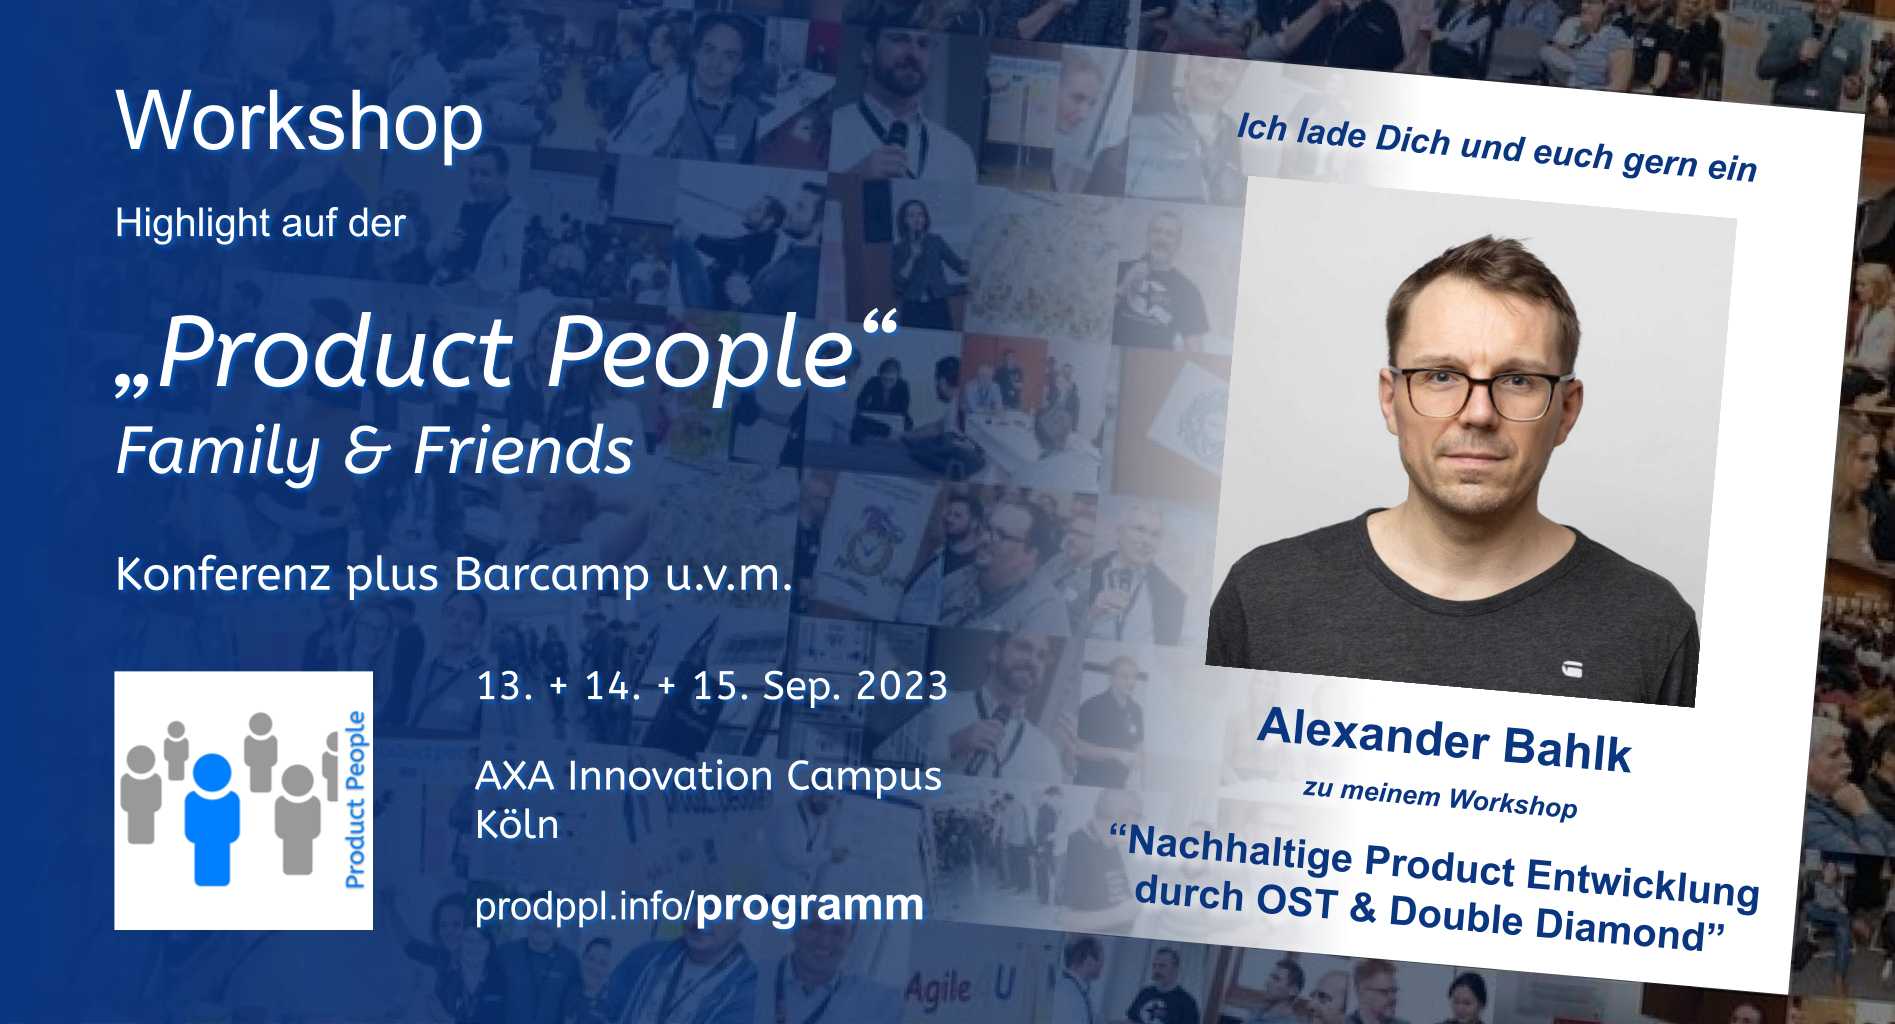 "Nachhaltige Product Entwicklung durch OST & Double Diamond" - Workshop von Alexander Bahlk - auf der "Product People - Family & Friends" - Konferenz plus Barcamp - Köln 2023 